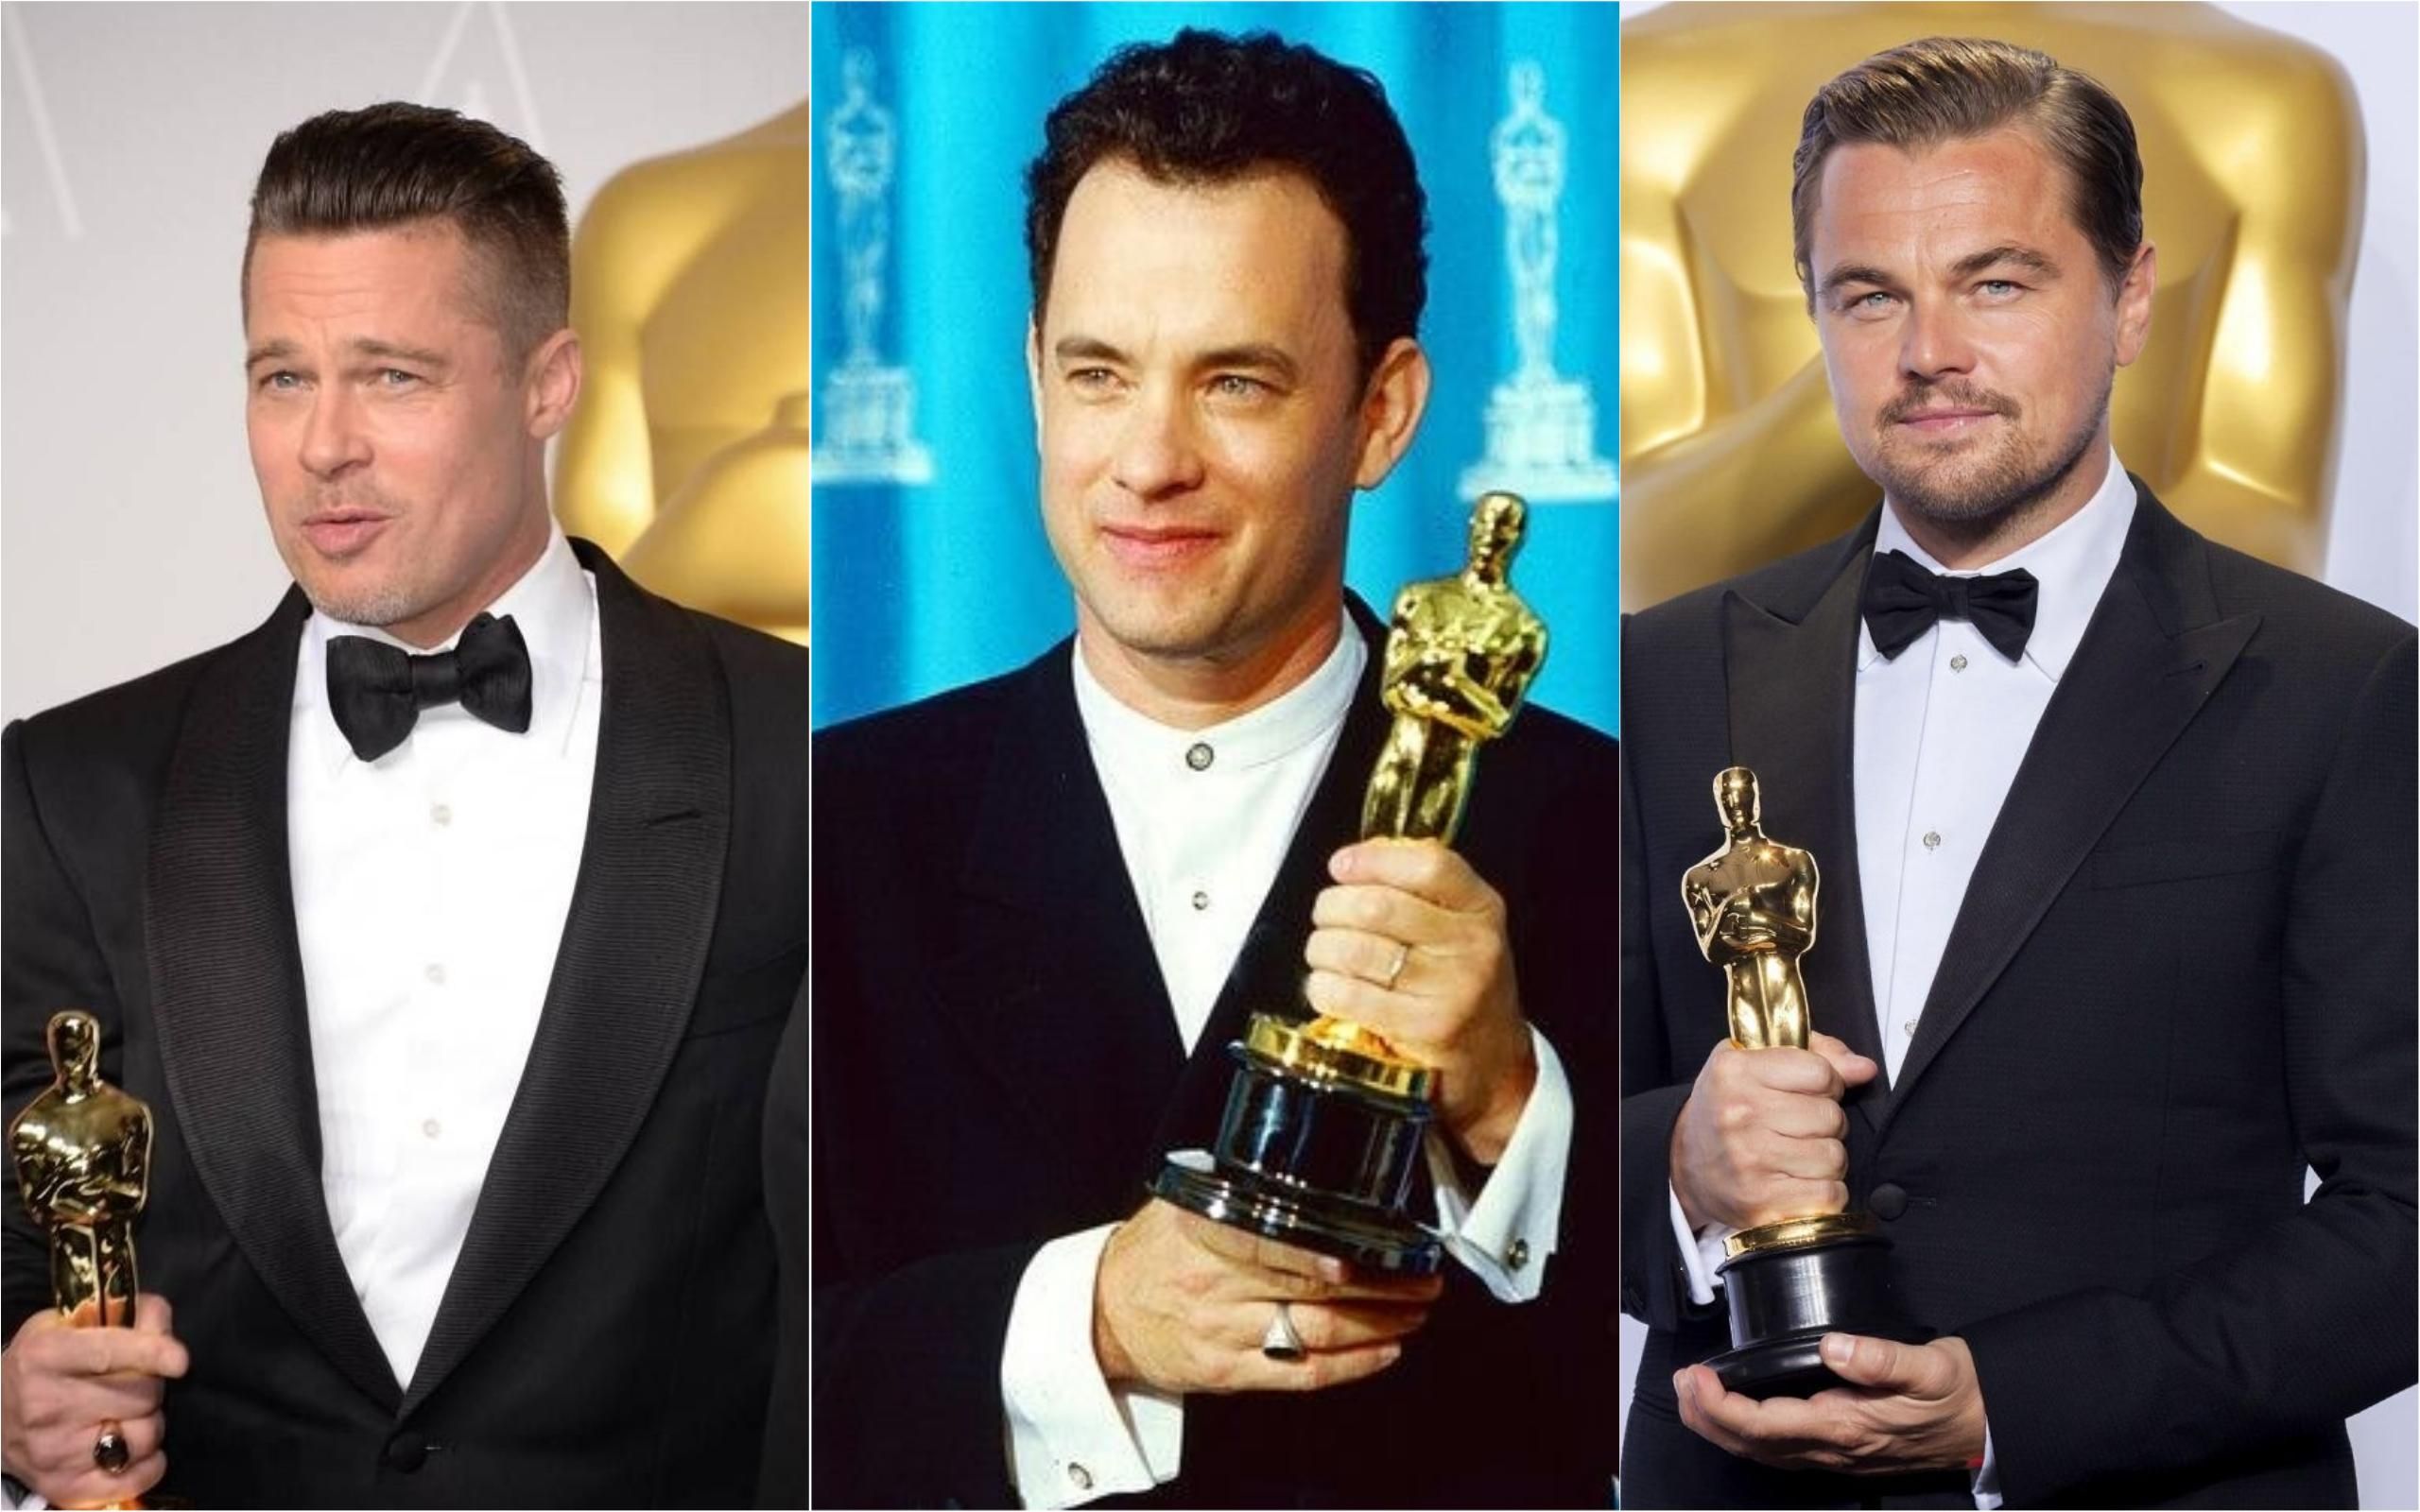 Ди Каприо, Брэд Питт, Том Хэнкс и другие:  киностудии выдвинули кандидатов на премию Оскар